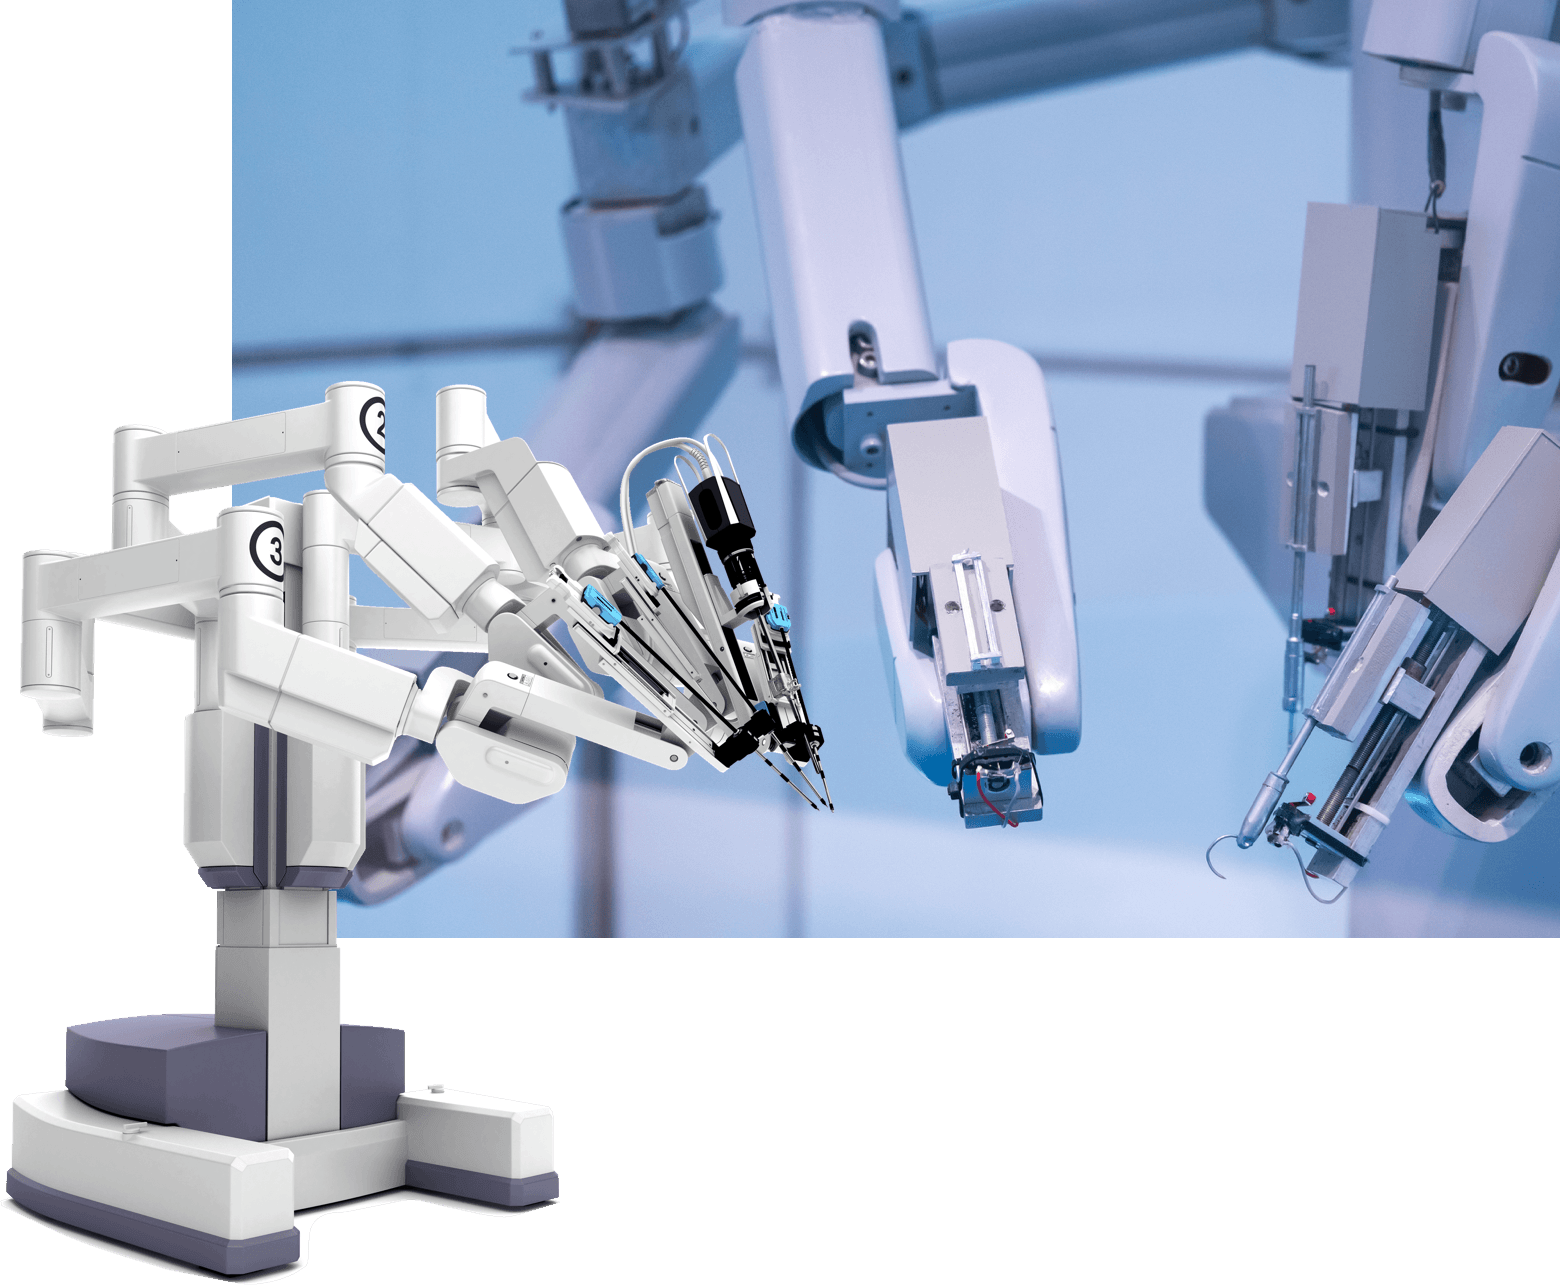 Medical robots